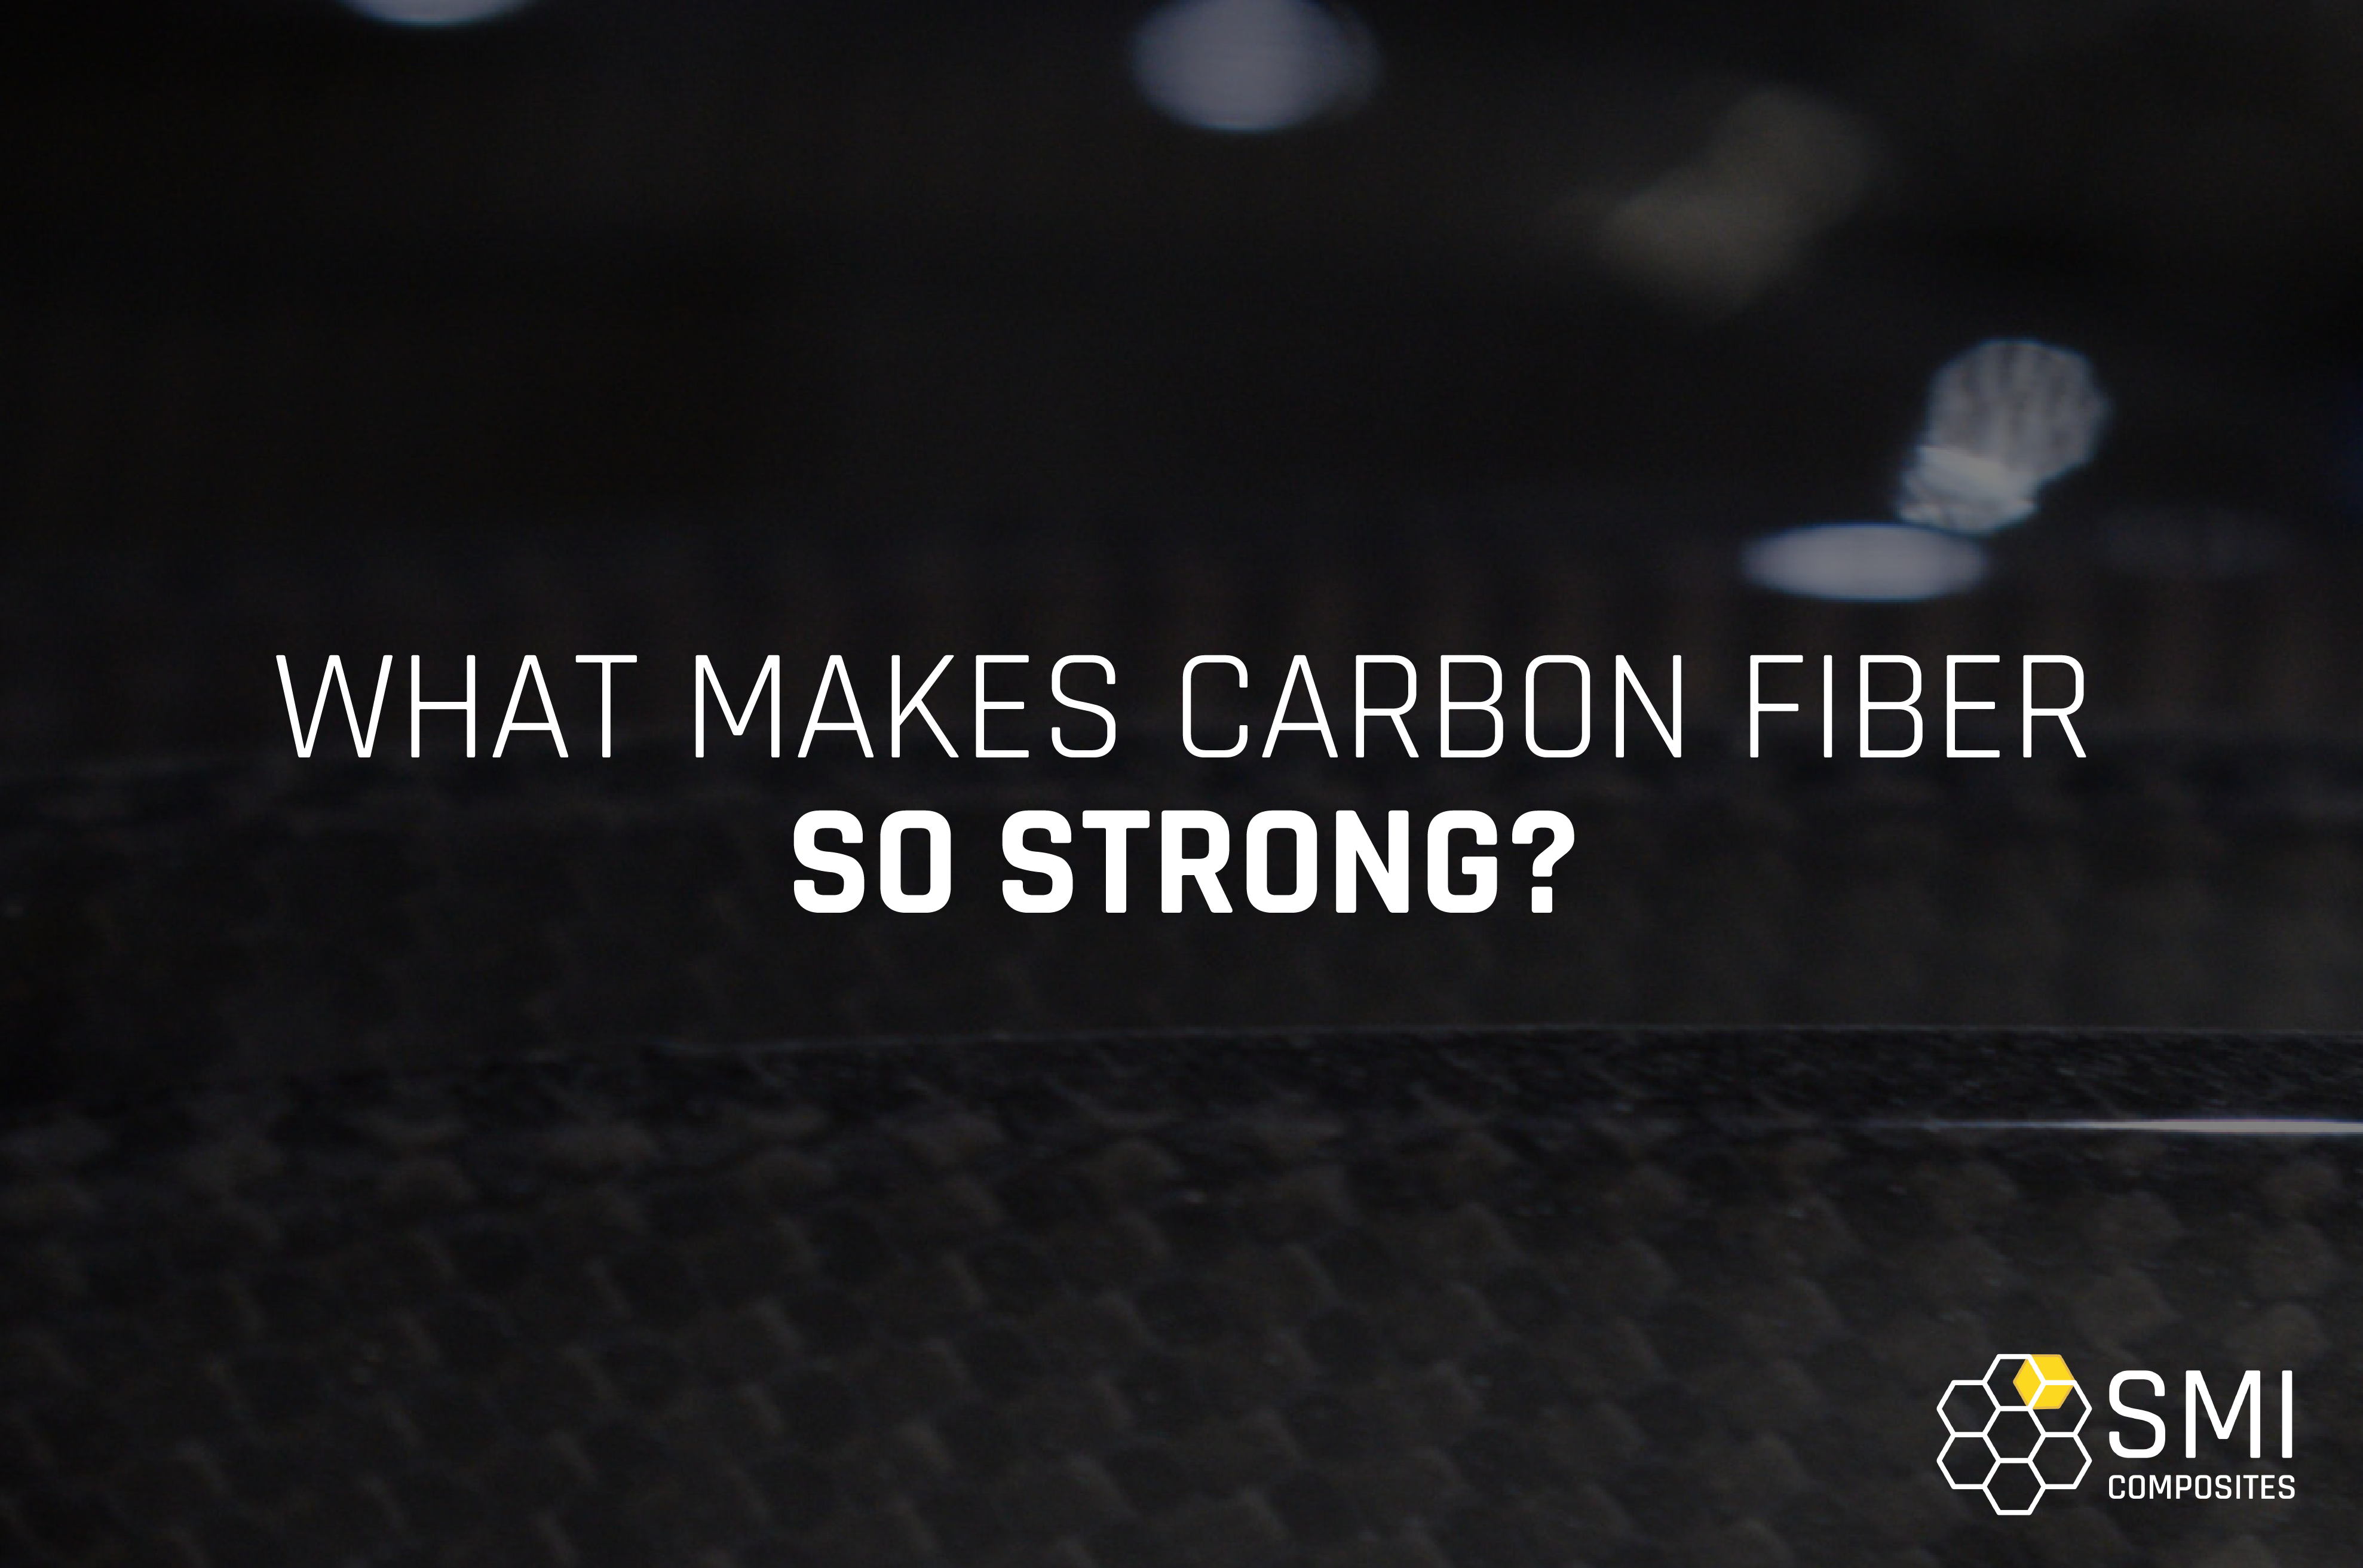 Carbon fiber
